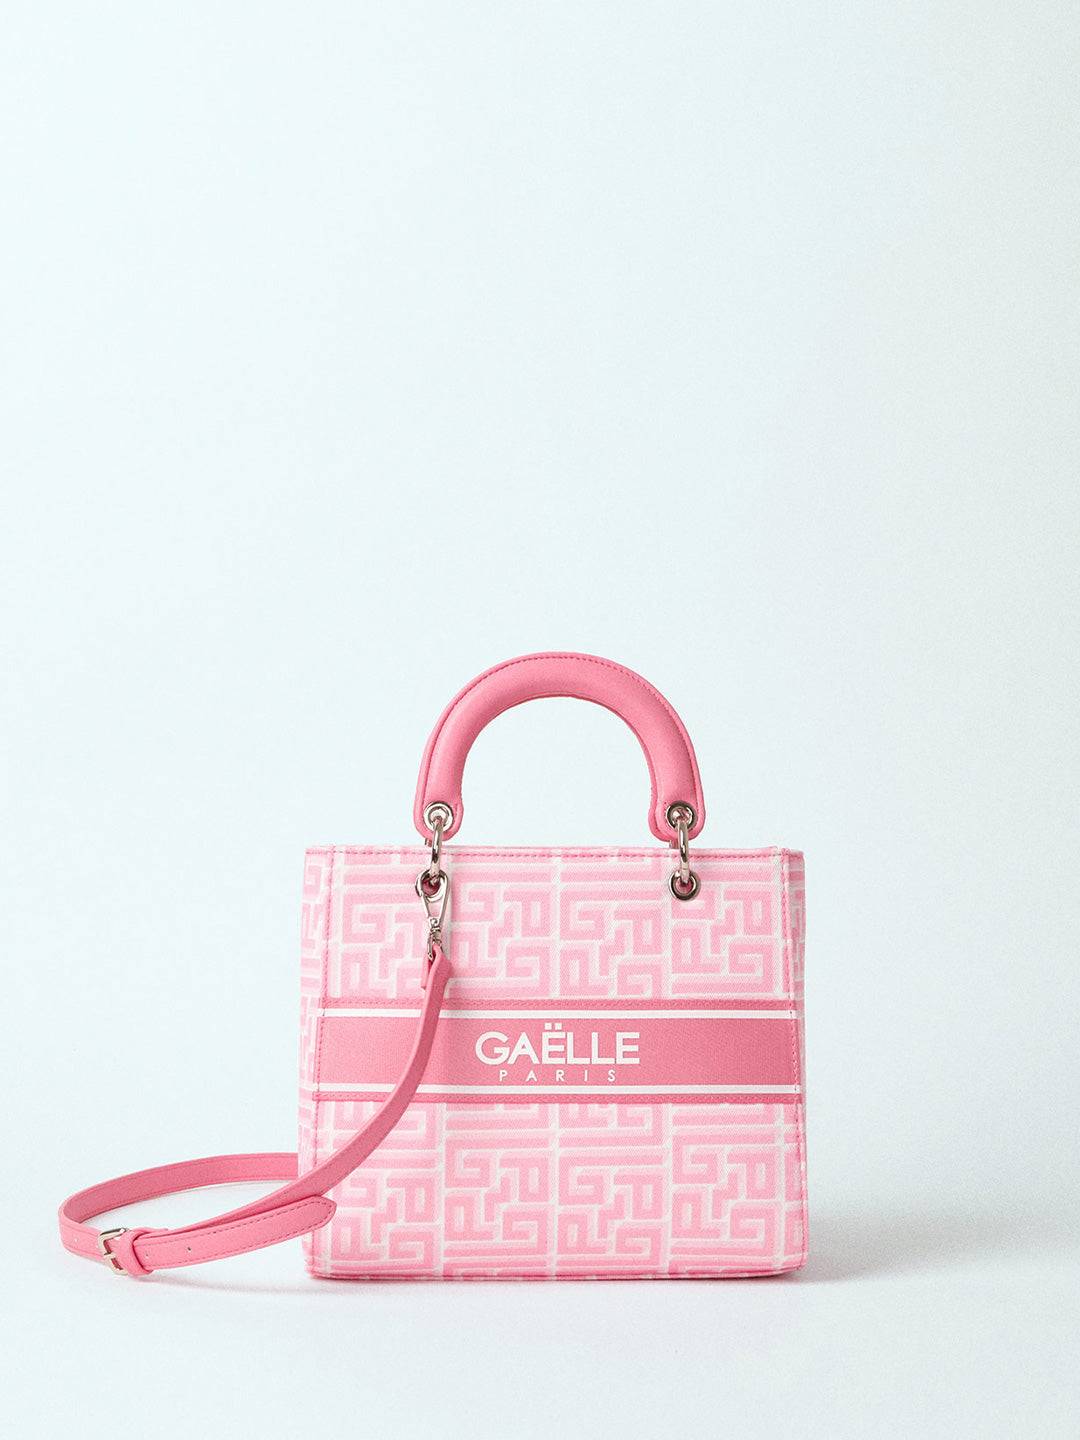 Gaelle borsa rosa con tracolla removibile e logo all over